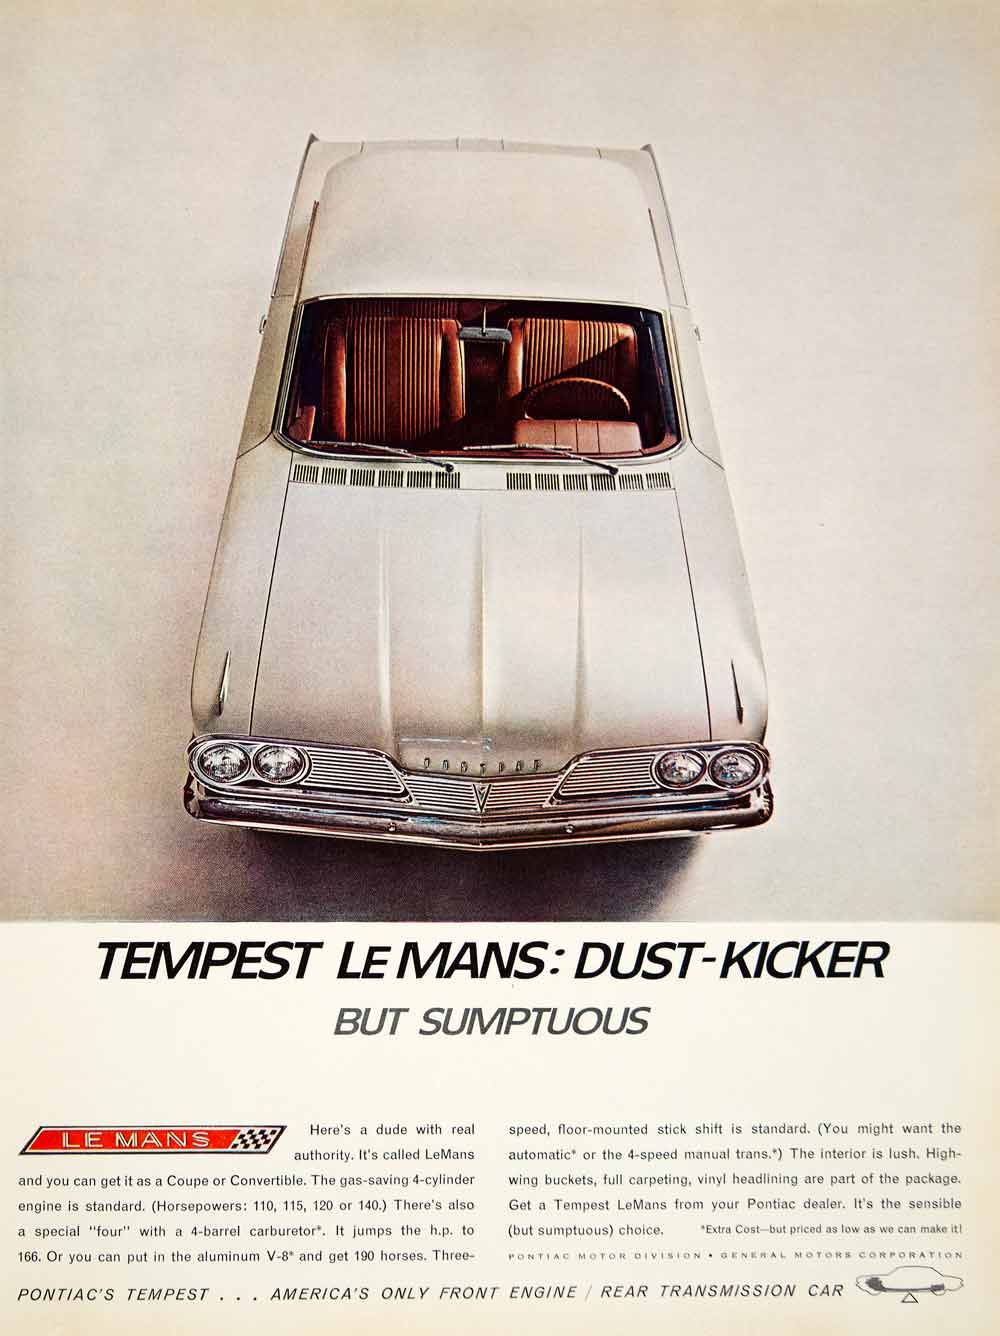 1962 Ad Vintage Pontiac Tempest Le Mans Dust-Kicker White Coupe Convertible YMM5